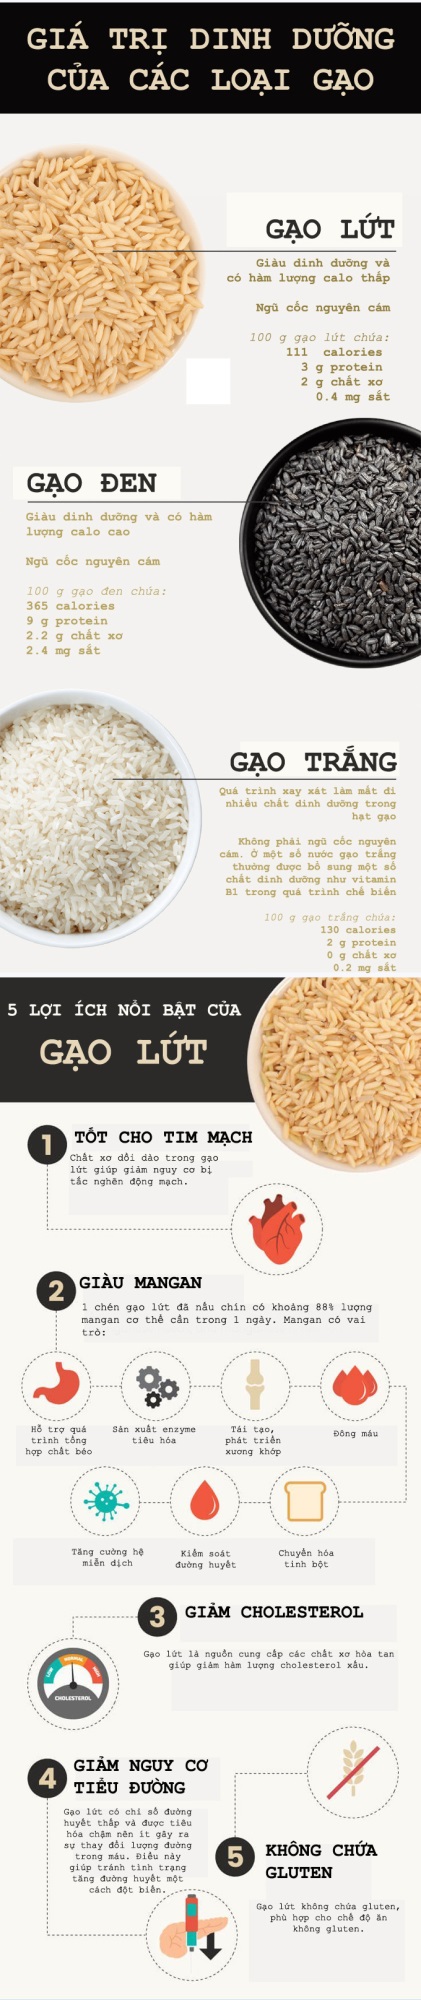 Lý do gạo lứt là tinh bột tốt, thường có trong chế độ ăn giảm cân - Ảnh 1